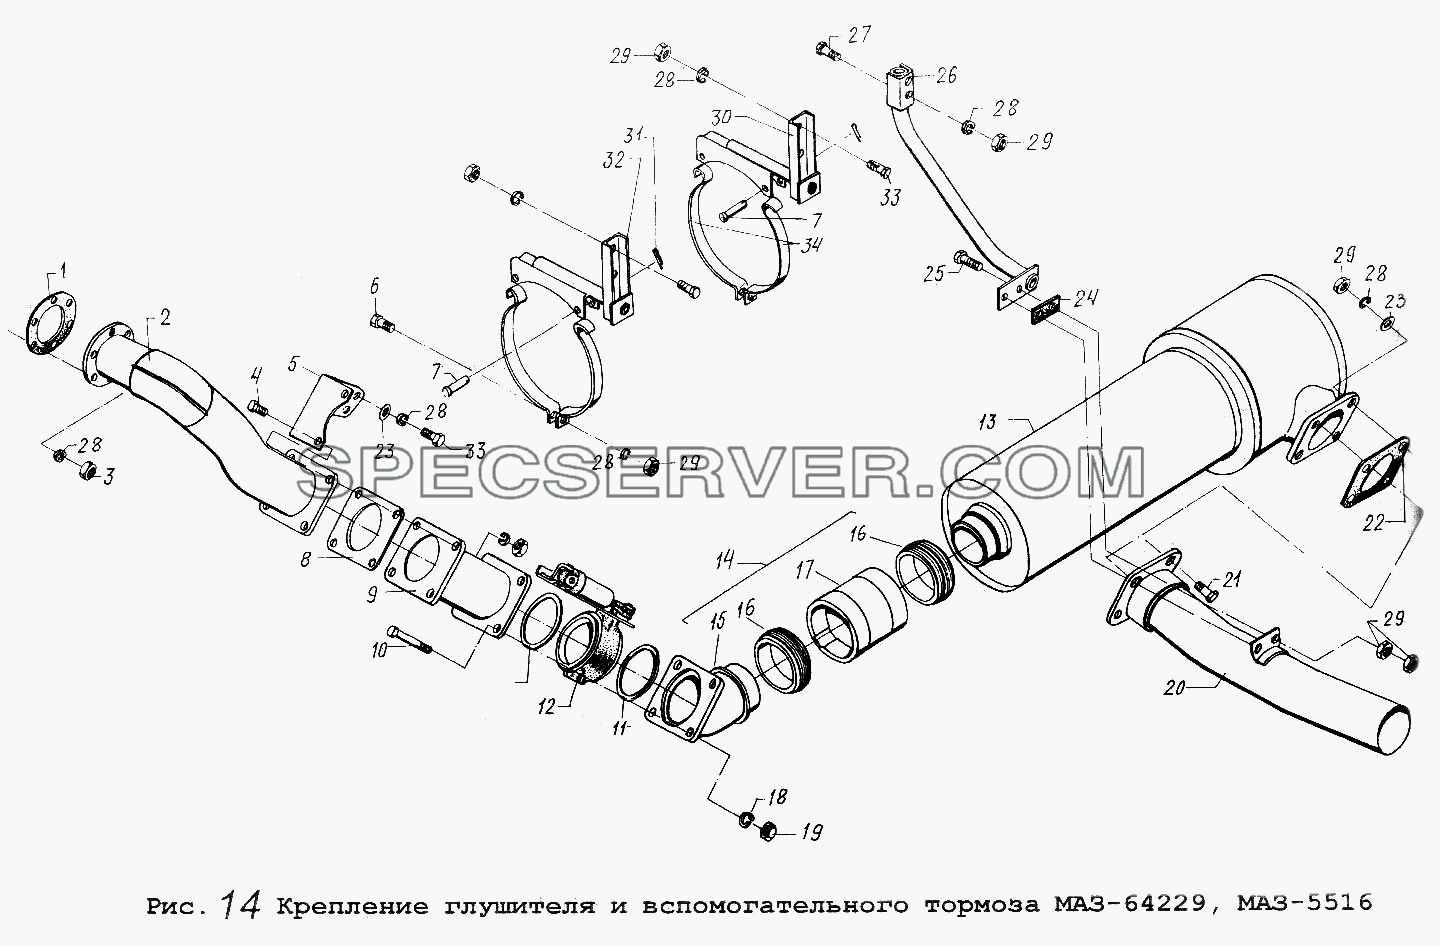 Крепление глушителя и вспомогательного тормоза МАЗ-64229, МАЗ-5516 для МАЗ-5516 (список запасных частей)